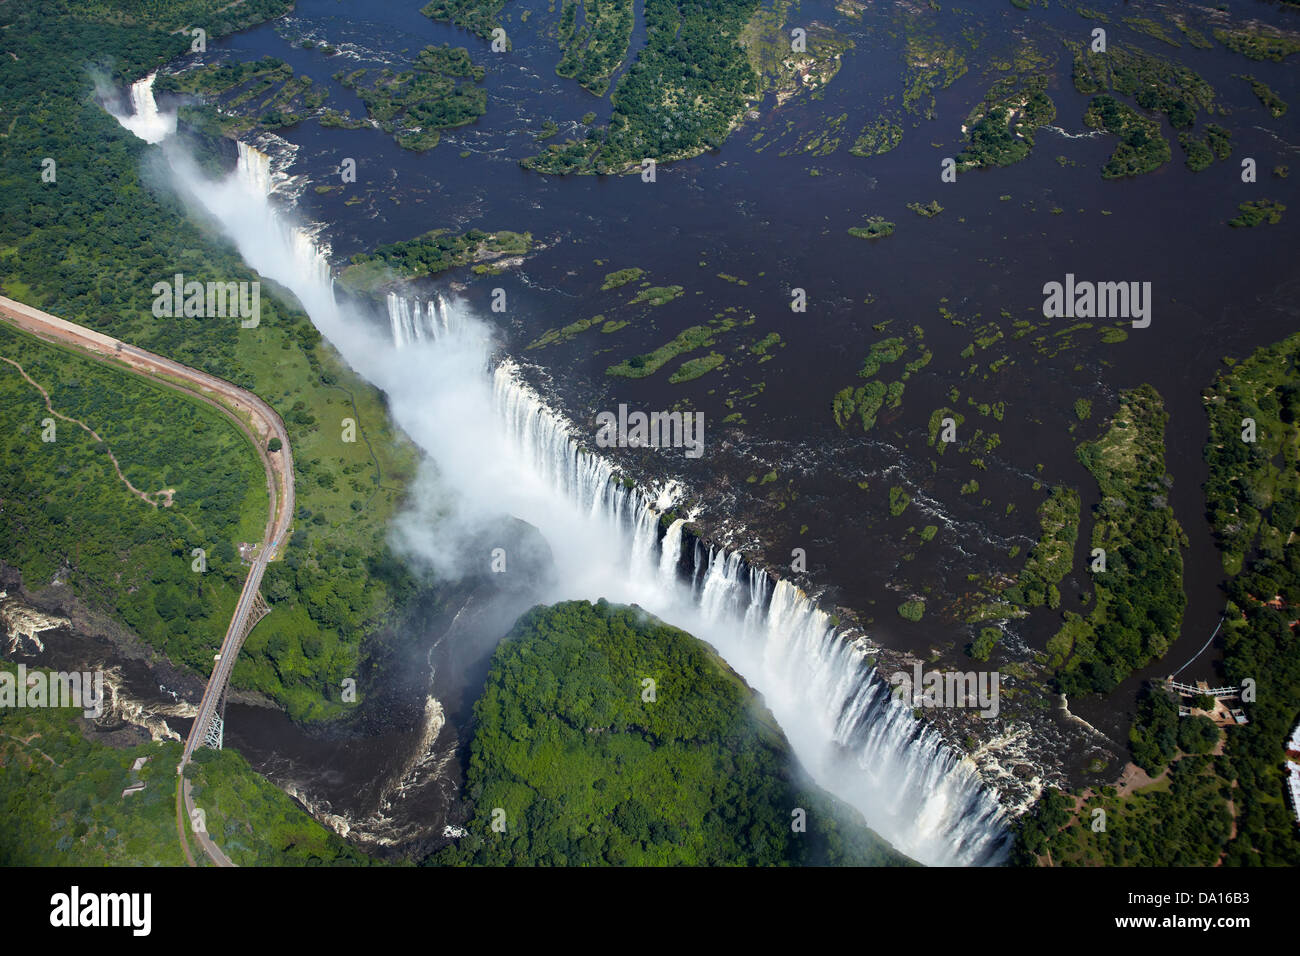 Victoria Falls or 'Mosi-oa-Tunya' (The Smoke that Thunders), and Zambezi River, Zimbabwe / Zambia border, Southern Africa Stock Photo